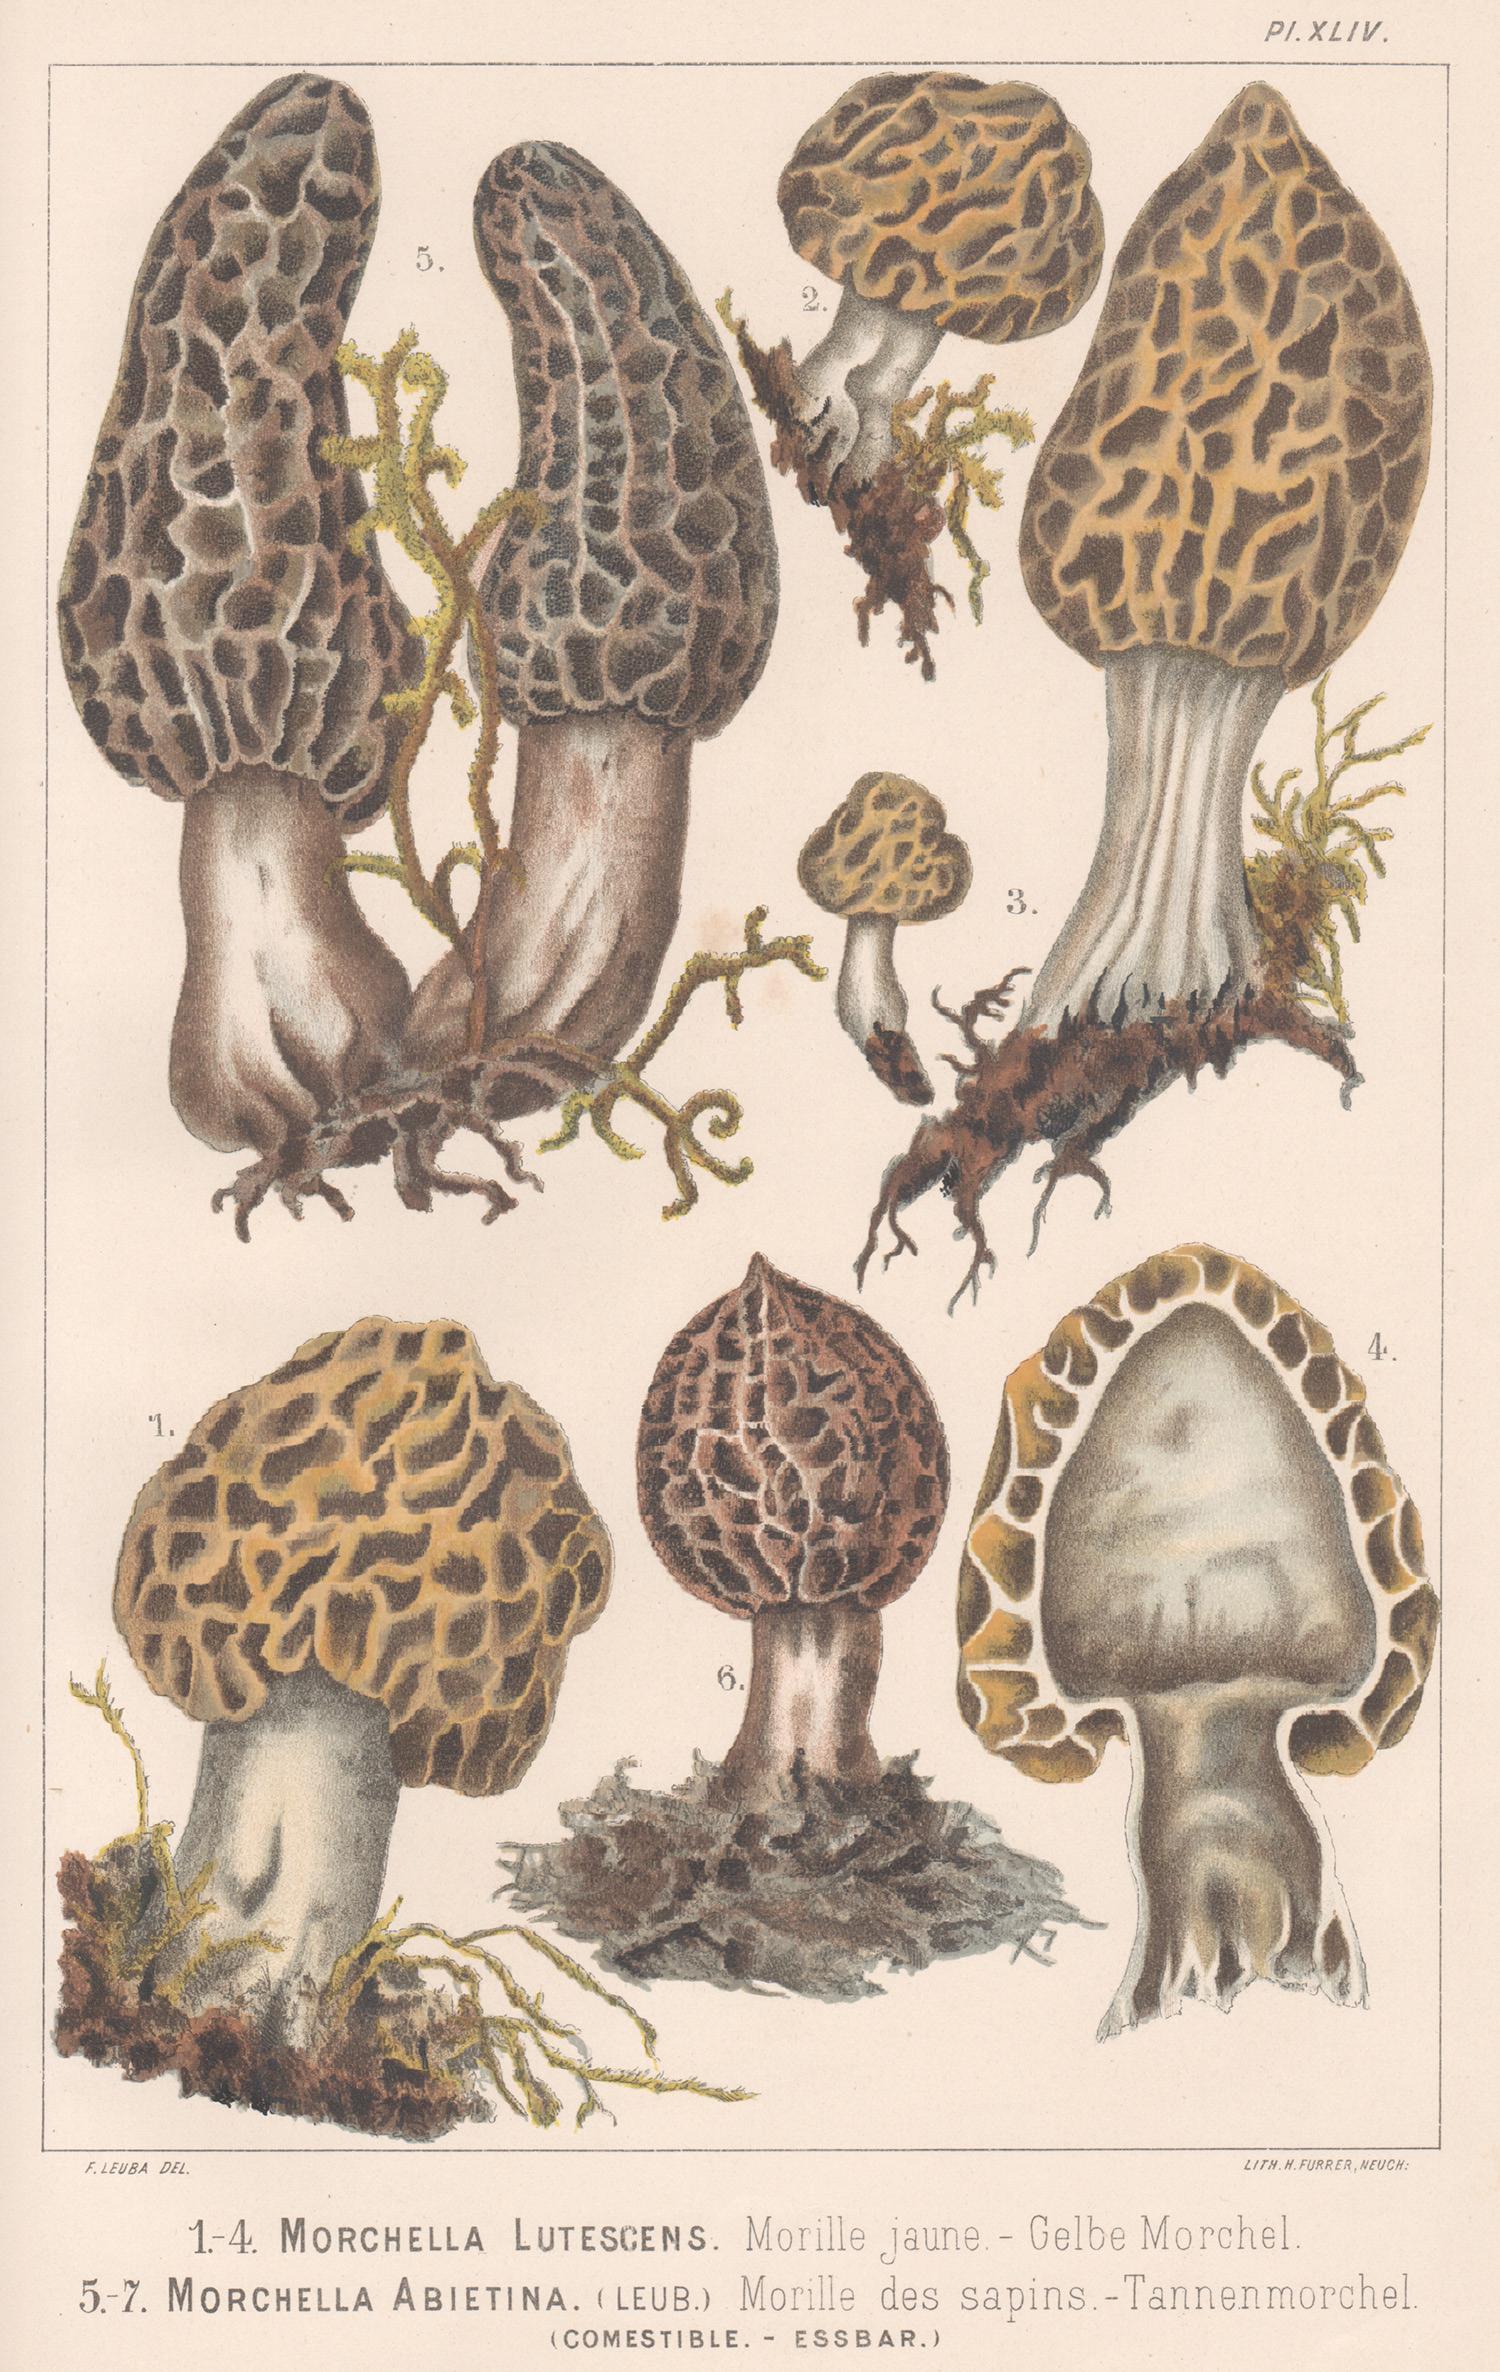 H Furrer after Fritz Leuba Print - Morchella Lutescens, Leuba antique mushroom morel fungi chromolithograph print